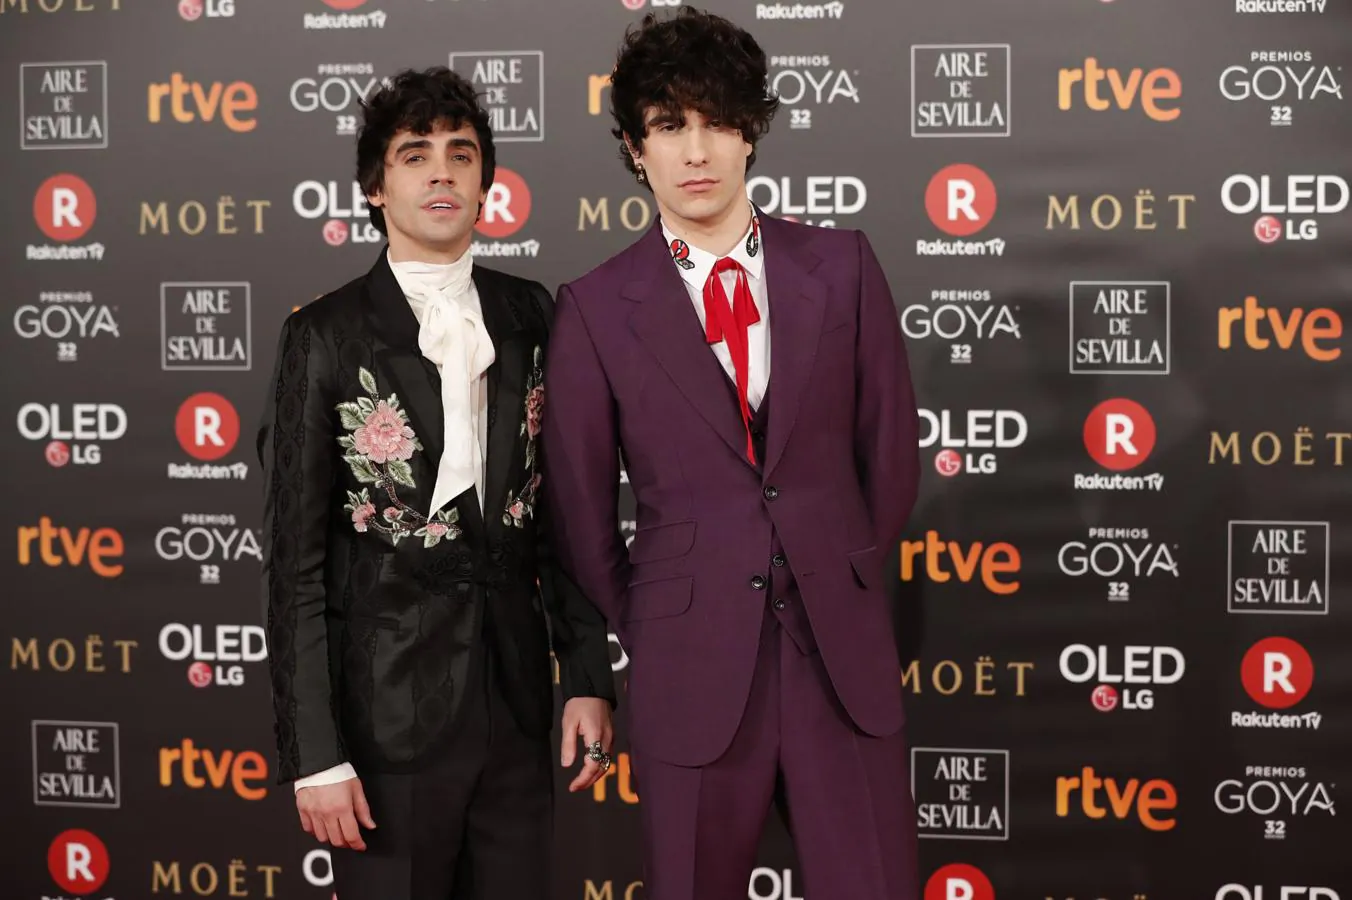 Parejas en la alfombra roja de los Goya 2018: Javier Ambrossi y Javier Calvo